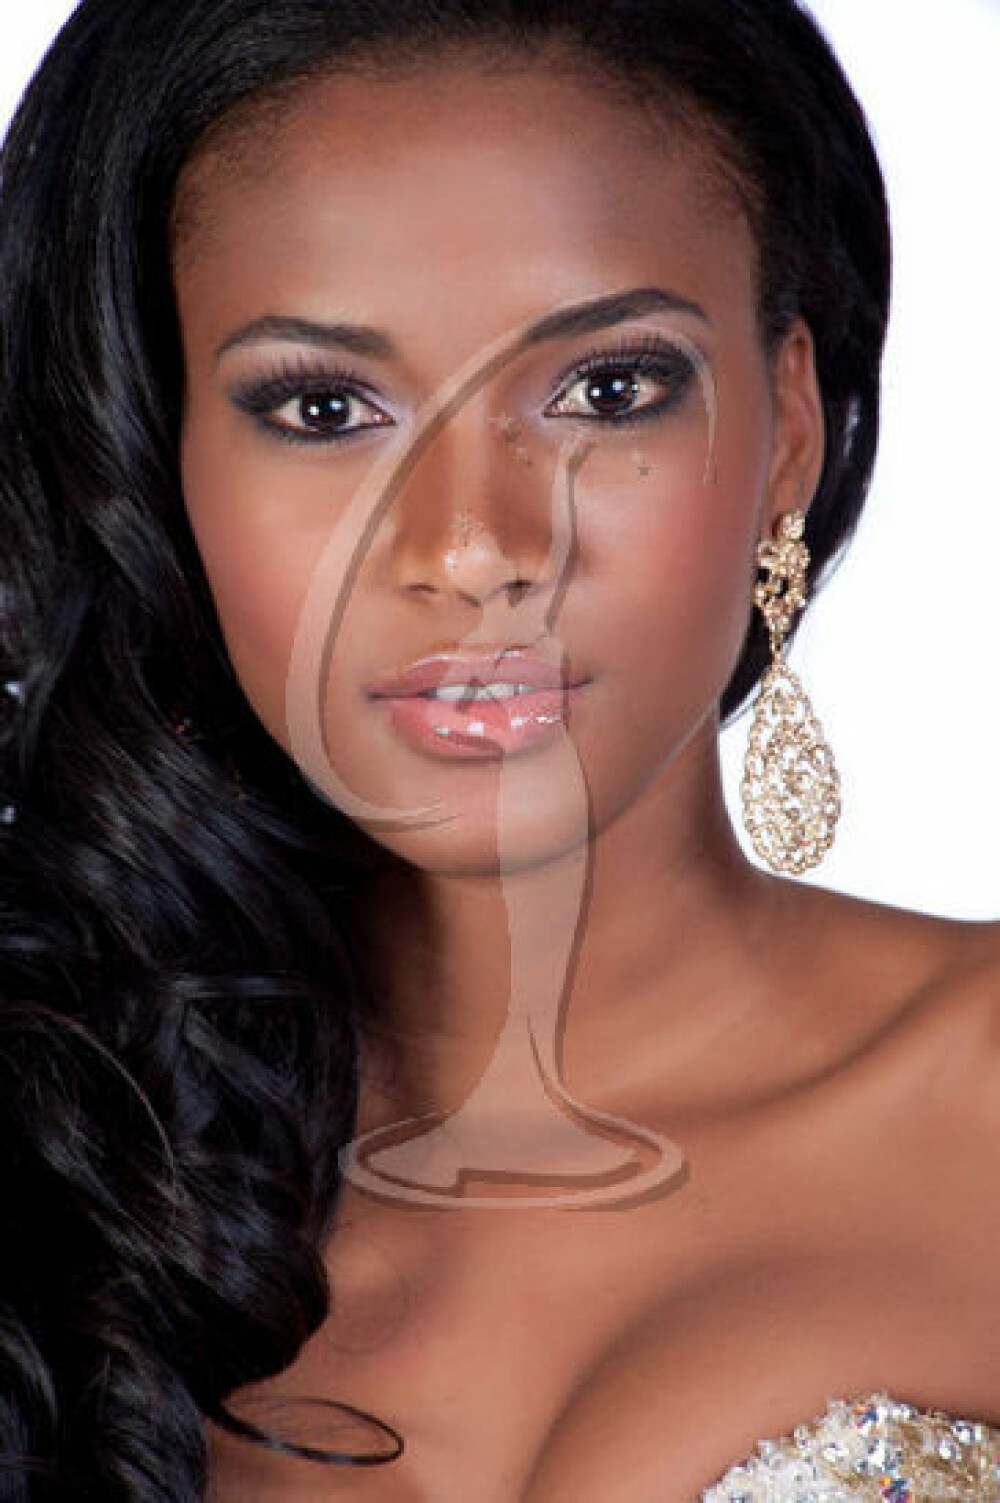 Este sau nu cea mai frumoasa femeie din lume? Acuzatii grave de frauda la Miss Univers 2011 - Imaginea 1